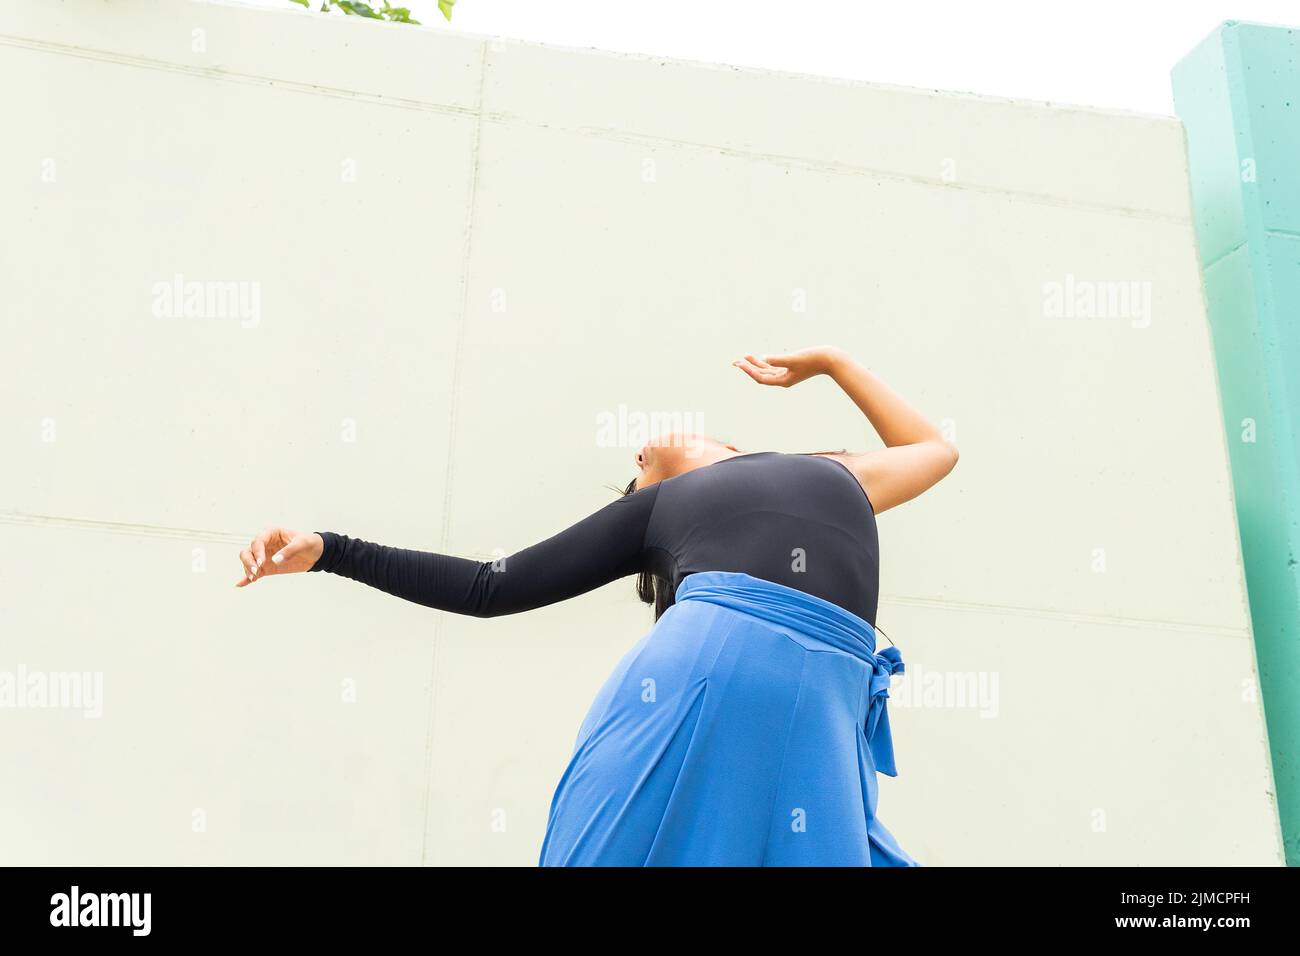 Basso angolo di giovane donna asiatica irriconoscibile che alza le braccia e si piega mentre balla vicino al muro della costruzione sulla strada della città Foto Stock